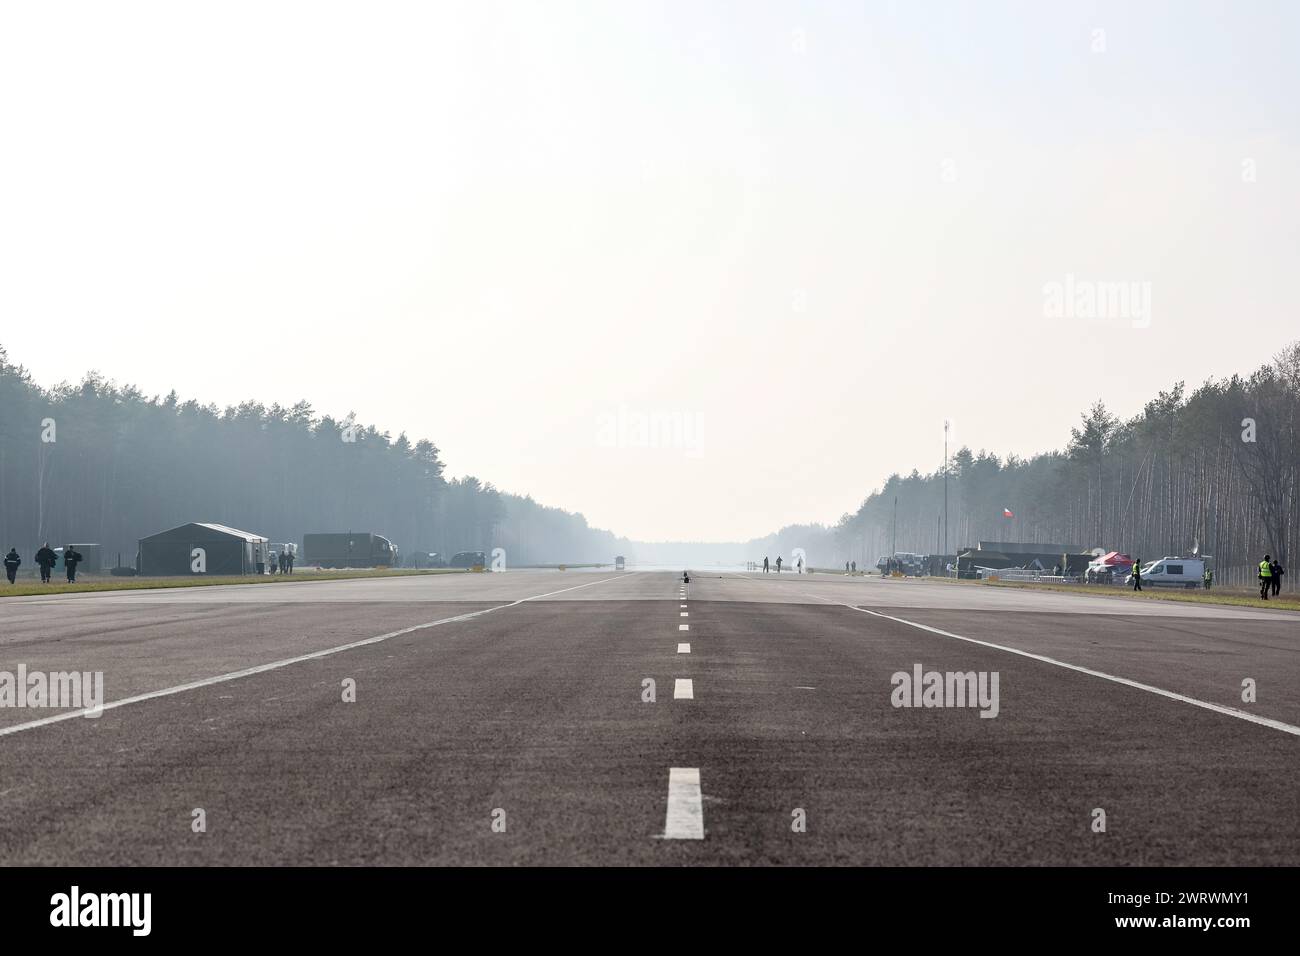 Wielbark, Pologne. 14 mars 2024. Une piste sur une voie publique est vue lors de l'exercice Wielbark 2024 NATO - Dragon-24, une partie de l'exercice à grande échelle de Defender-24. Wielbark 2024 vise à exercer le démarrage et l'atterrissage d'avions de chasse sur une route publique provinciale. Les exercices constants Defender-2, qui se dérouleront principalement en Europe centrale, impliqueront quelque 90 000 soldats de tous les pays de l'OTAN, y compris la Suède. Leur but est de dissuader et de présenter des capacités défensives face à une éventuelle agression. Crédit : SOPA images Limited/Alamy Live News Banque D'Images